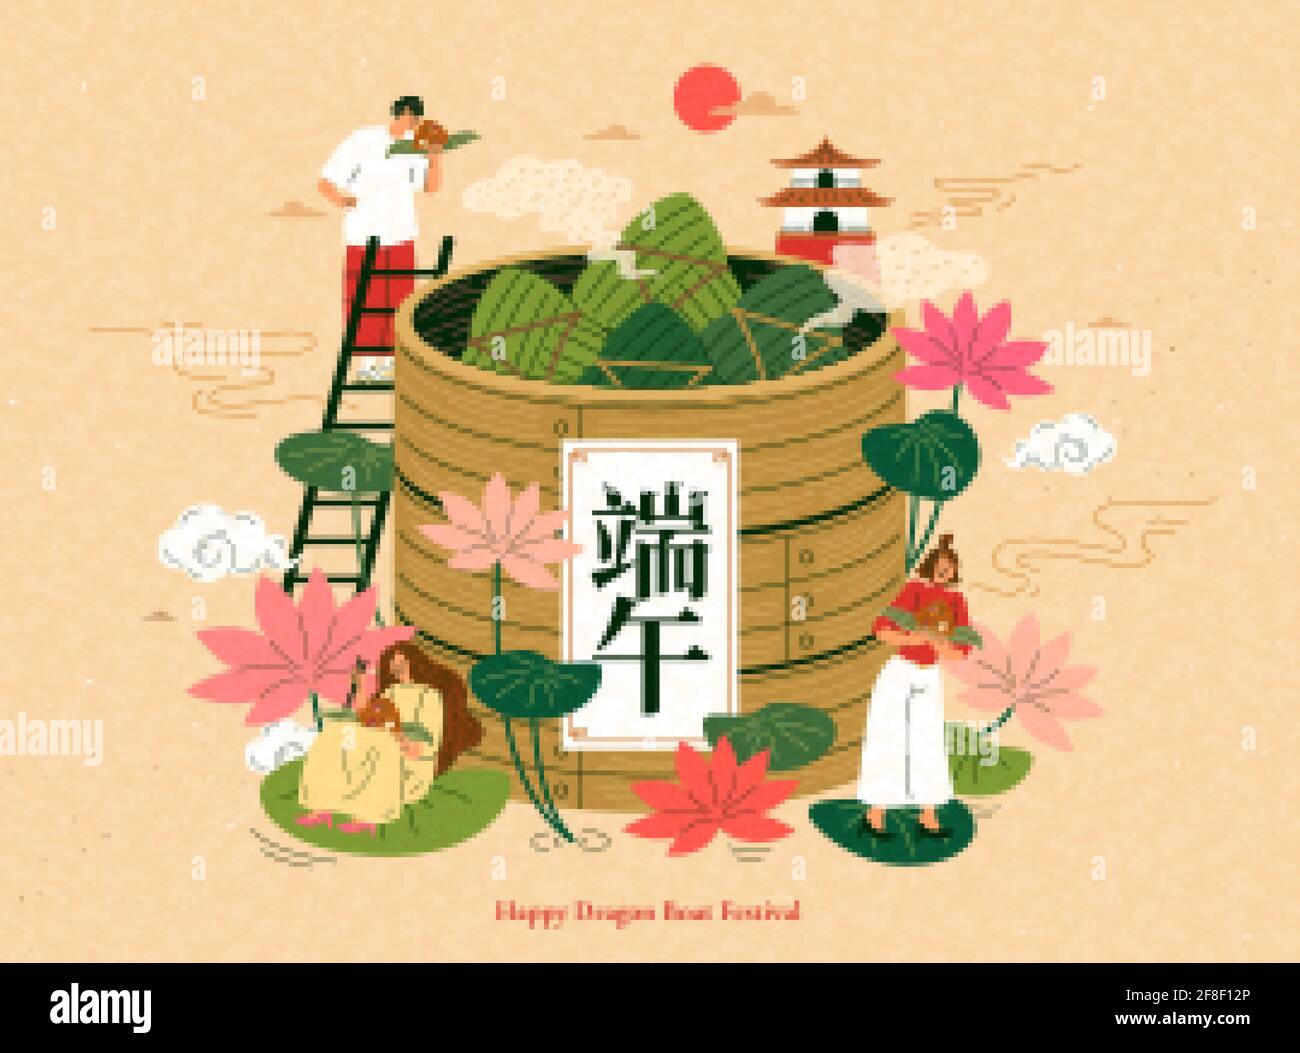 Illustration du Dragon Boat Festival. Les Asiatiques apprécient le riz traditionnel qui se déverse autour d'un cuiseur vapeur en bambou géant. Festival Duanwu écrit en chinois. Illustration de Vecteur